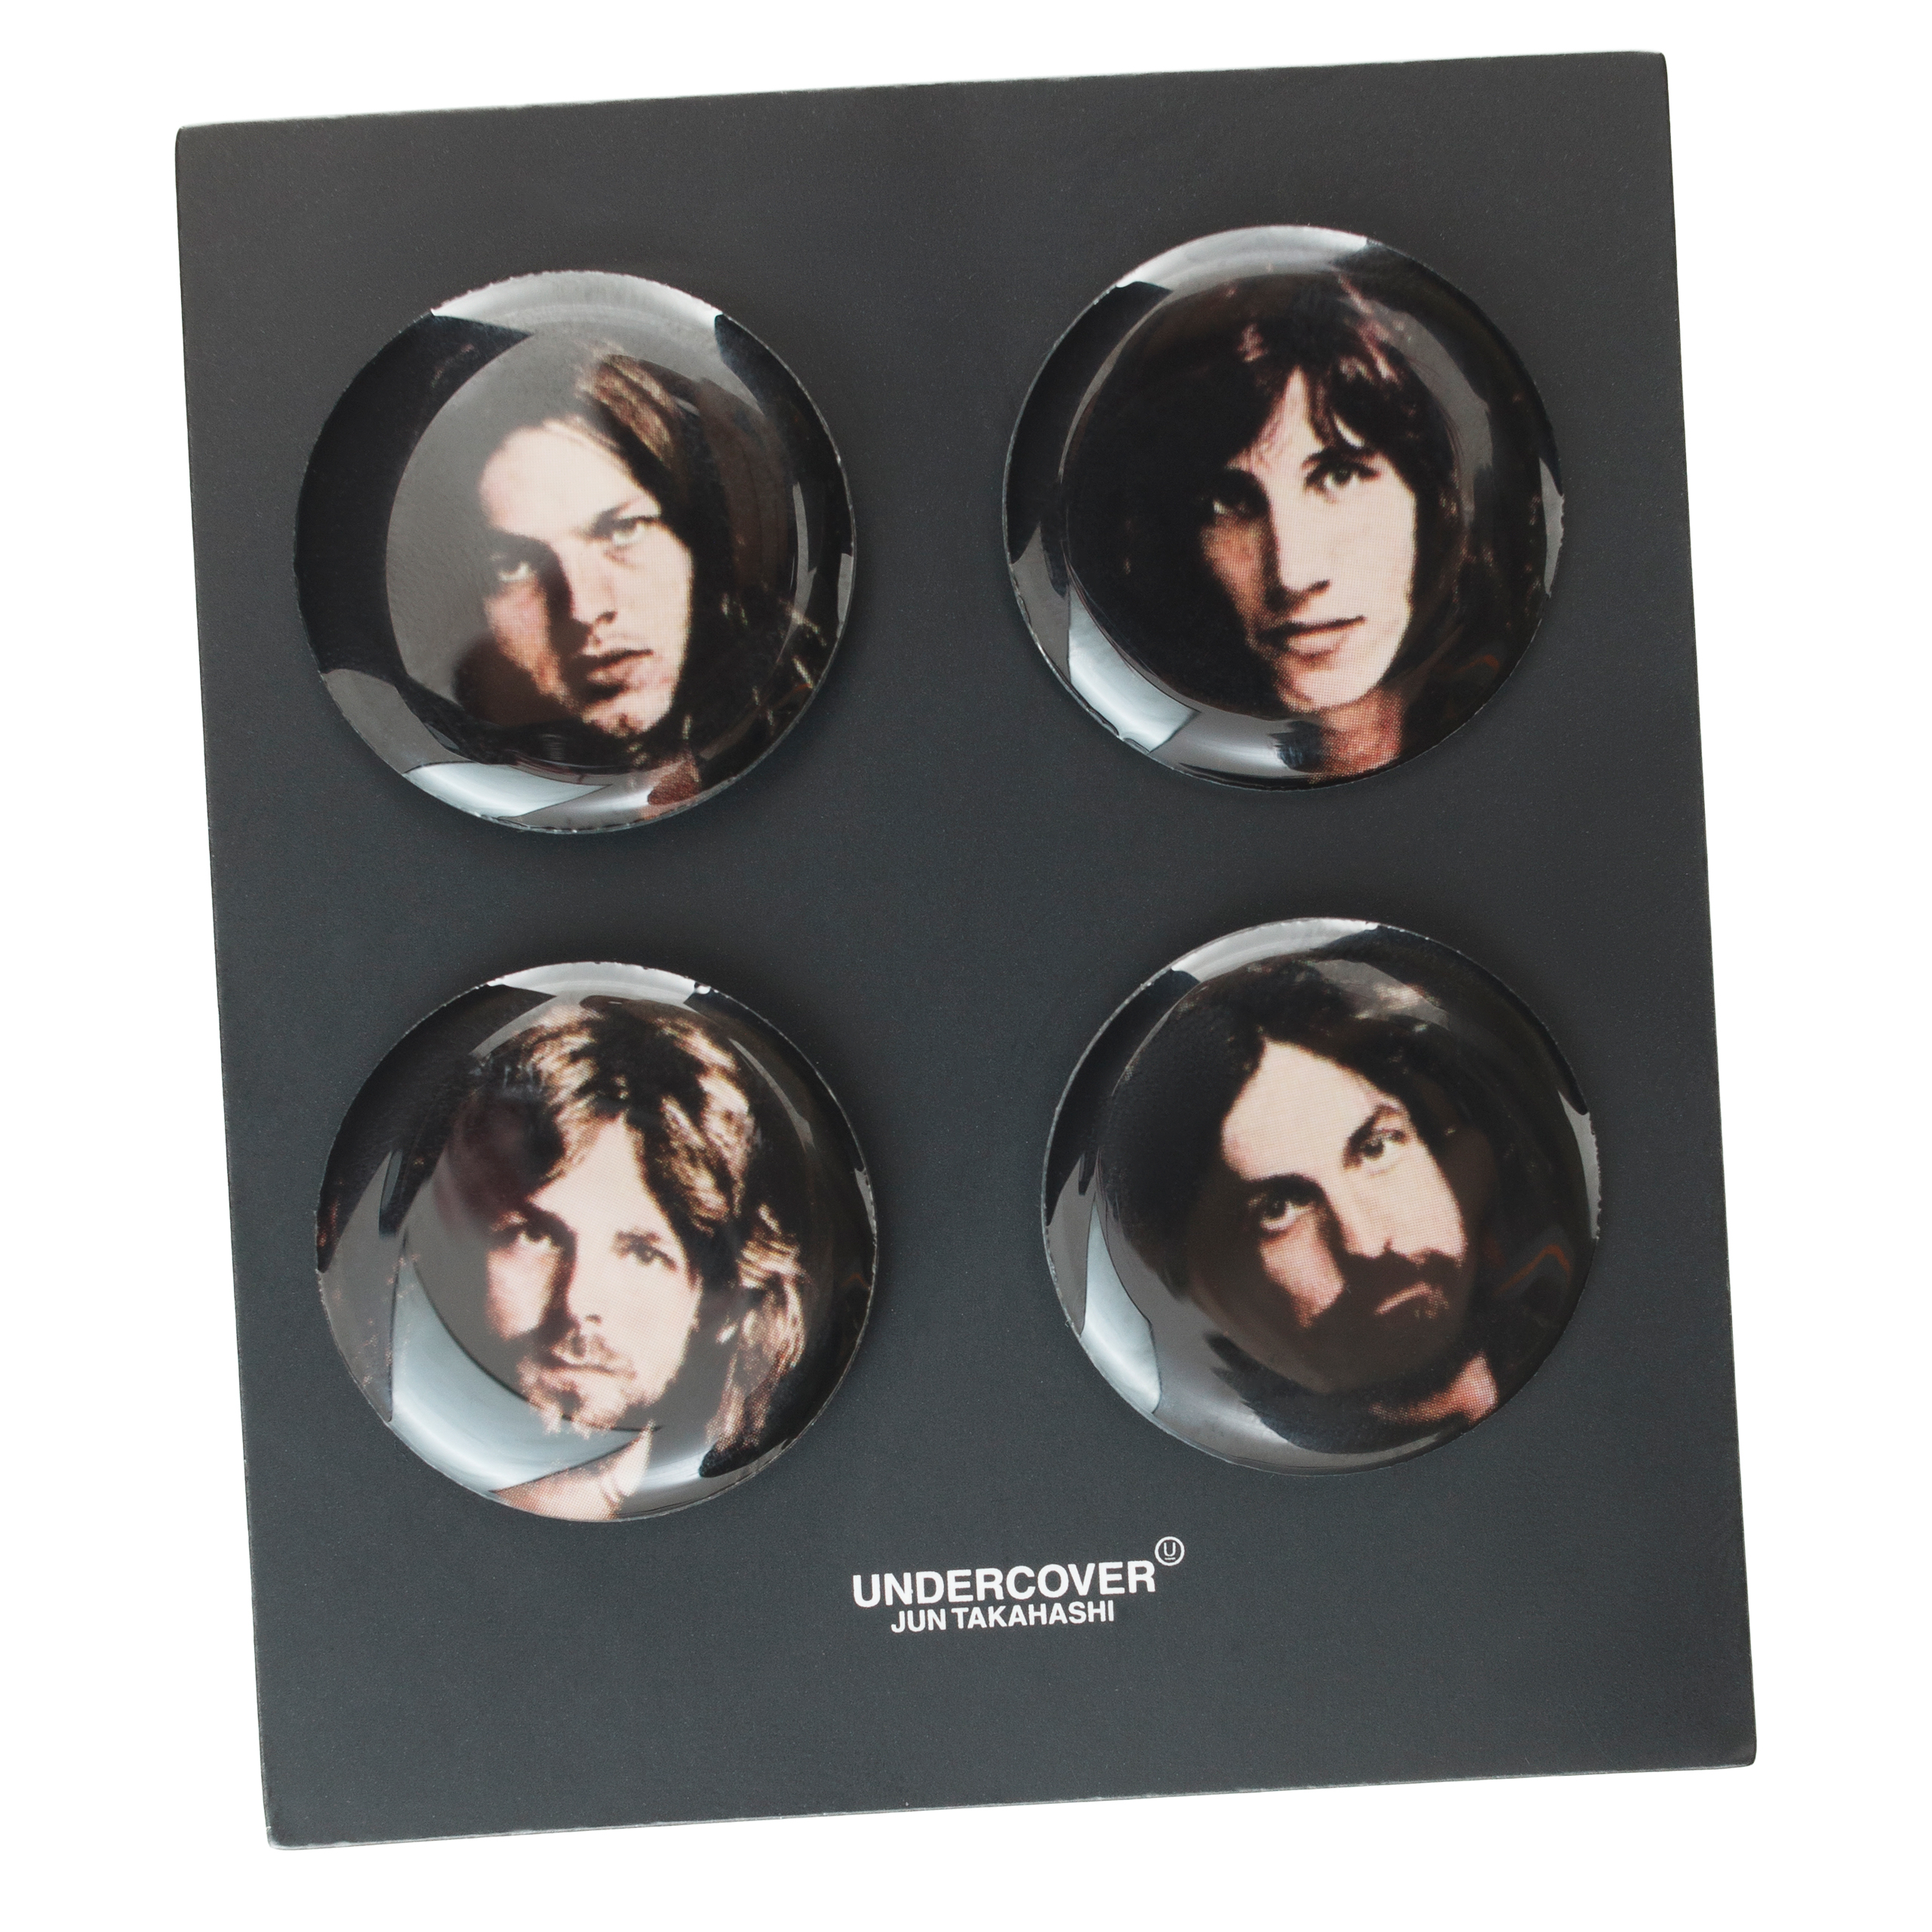 Комплект из 4 значков с участниками группы Pink Floyd